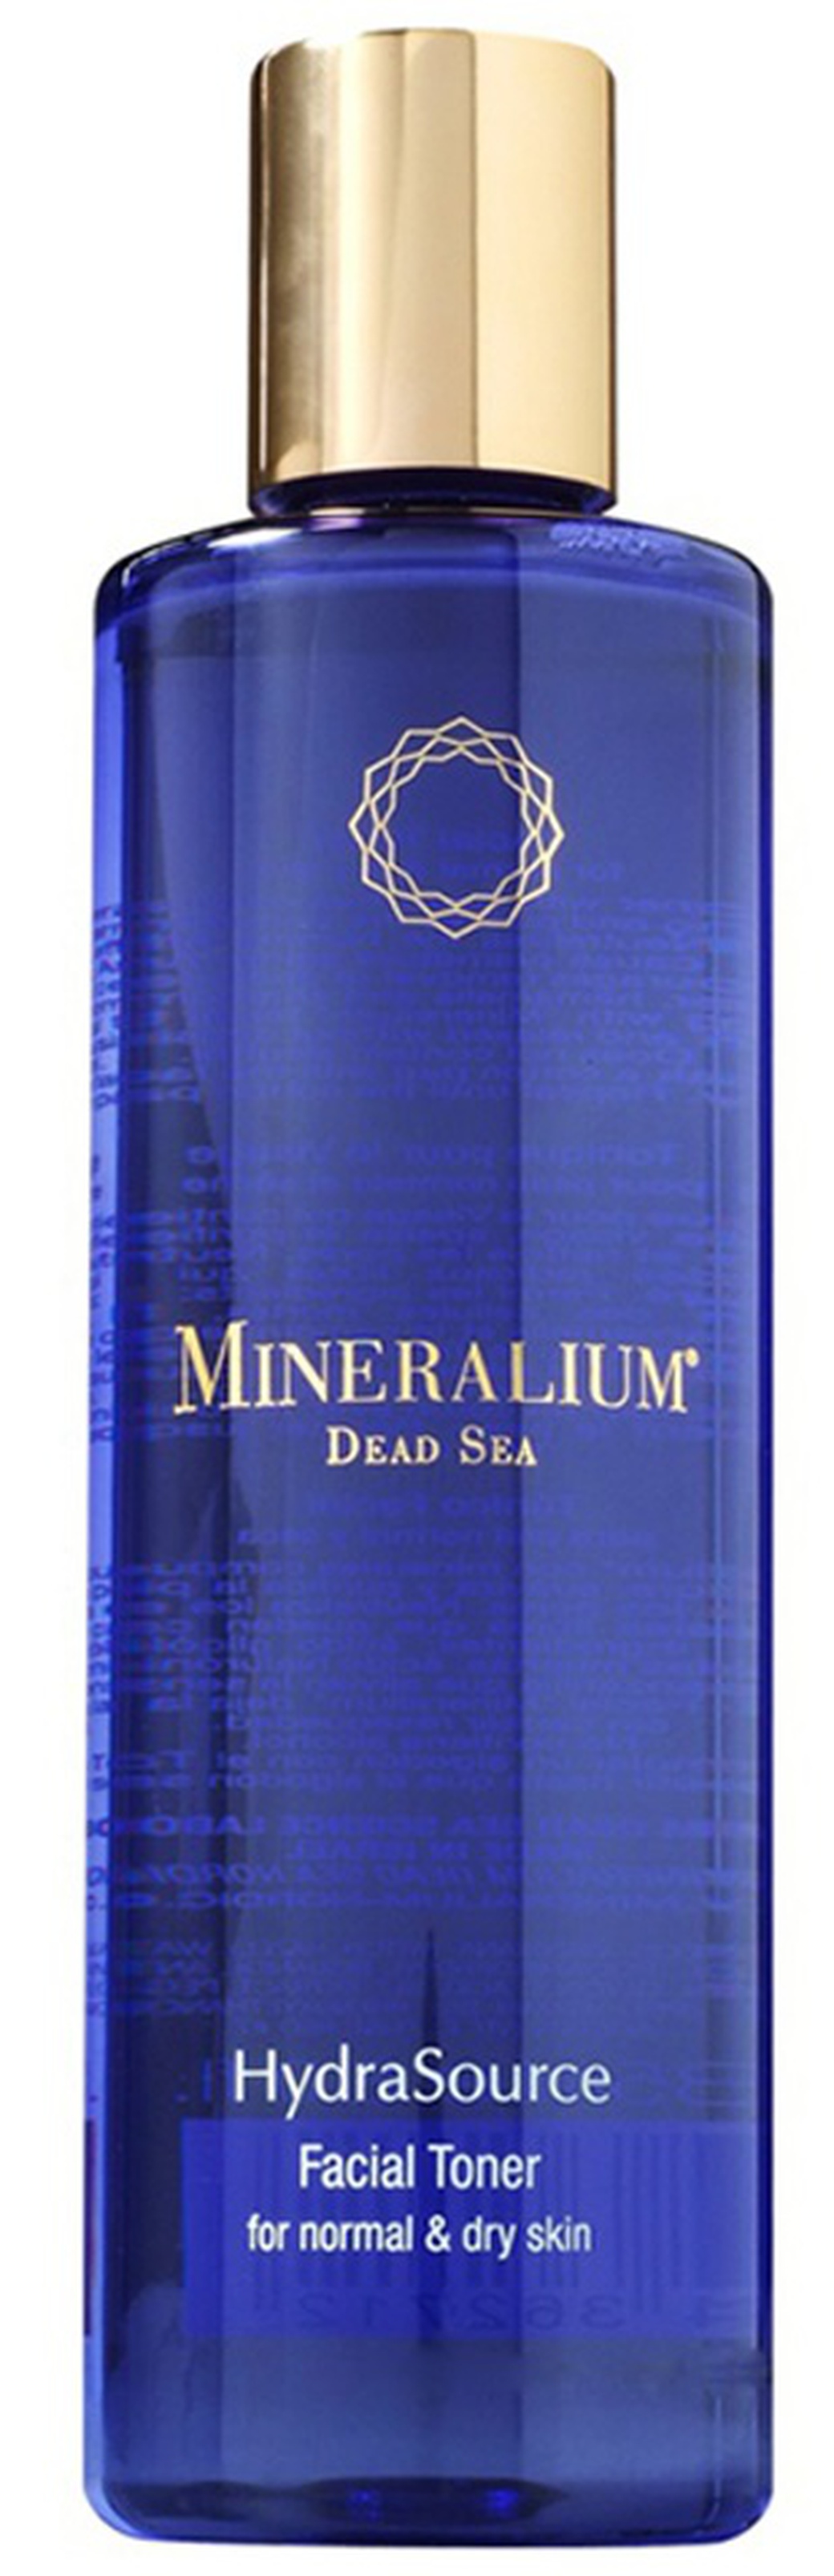 Mineralium Лосьон для лица для нормальной и сухой кожи 235ml фото